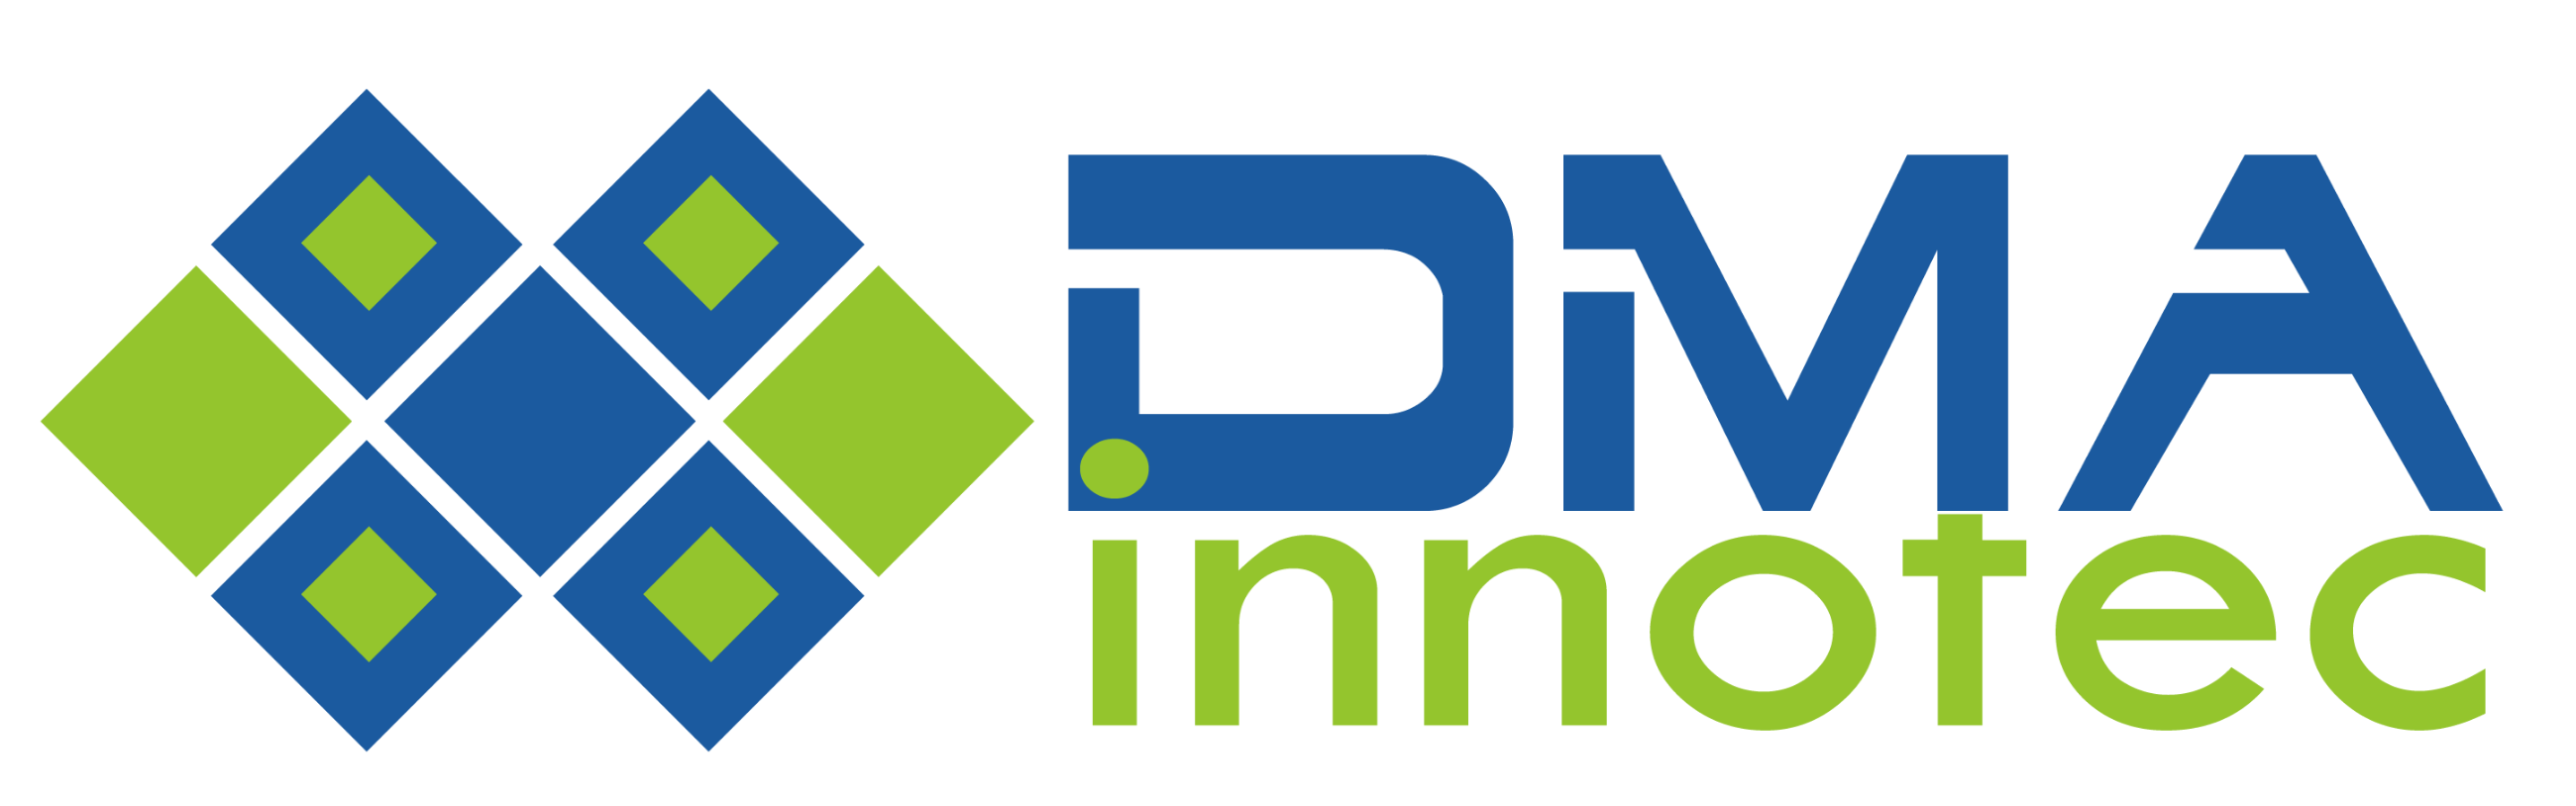 DMA Innotec Int'l Co., Ltd.